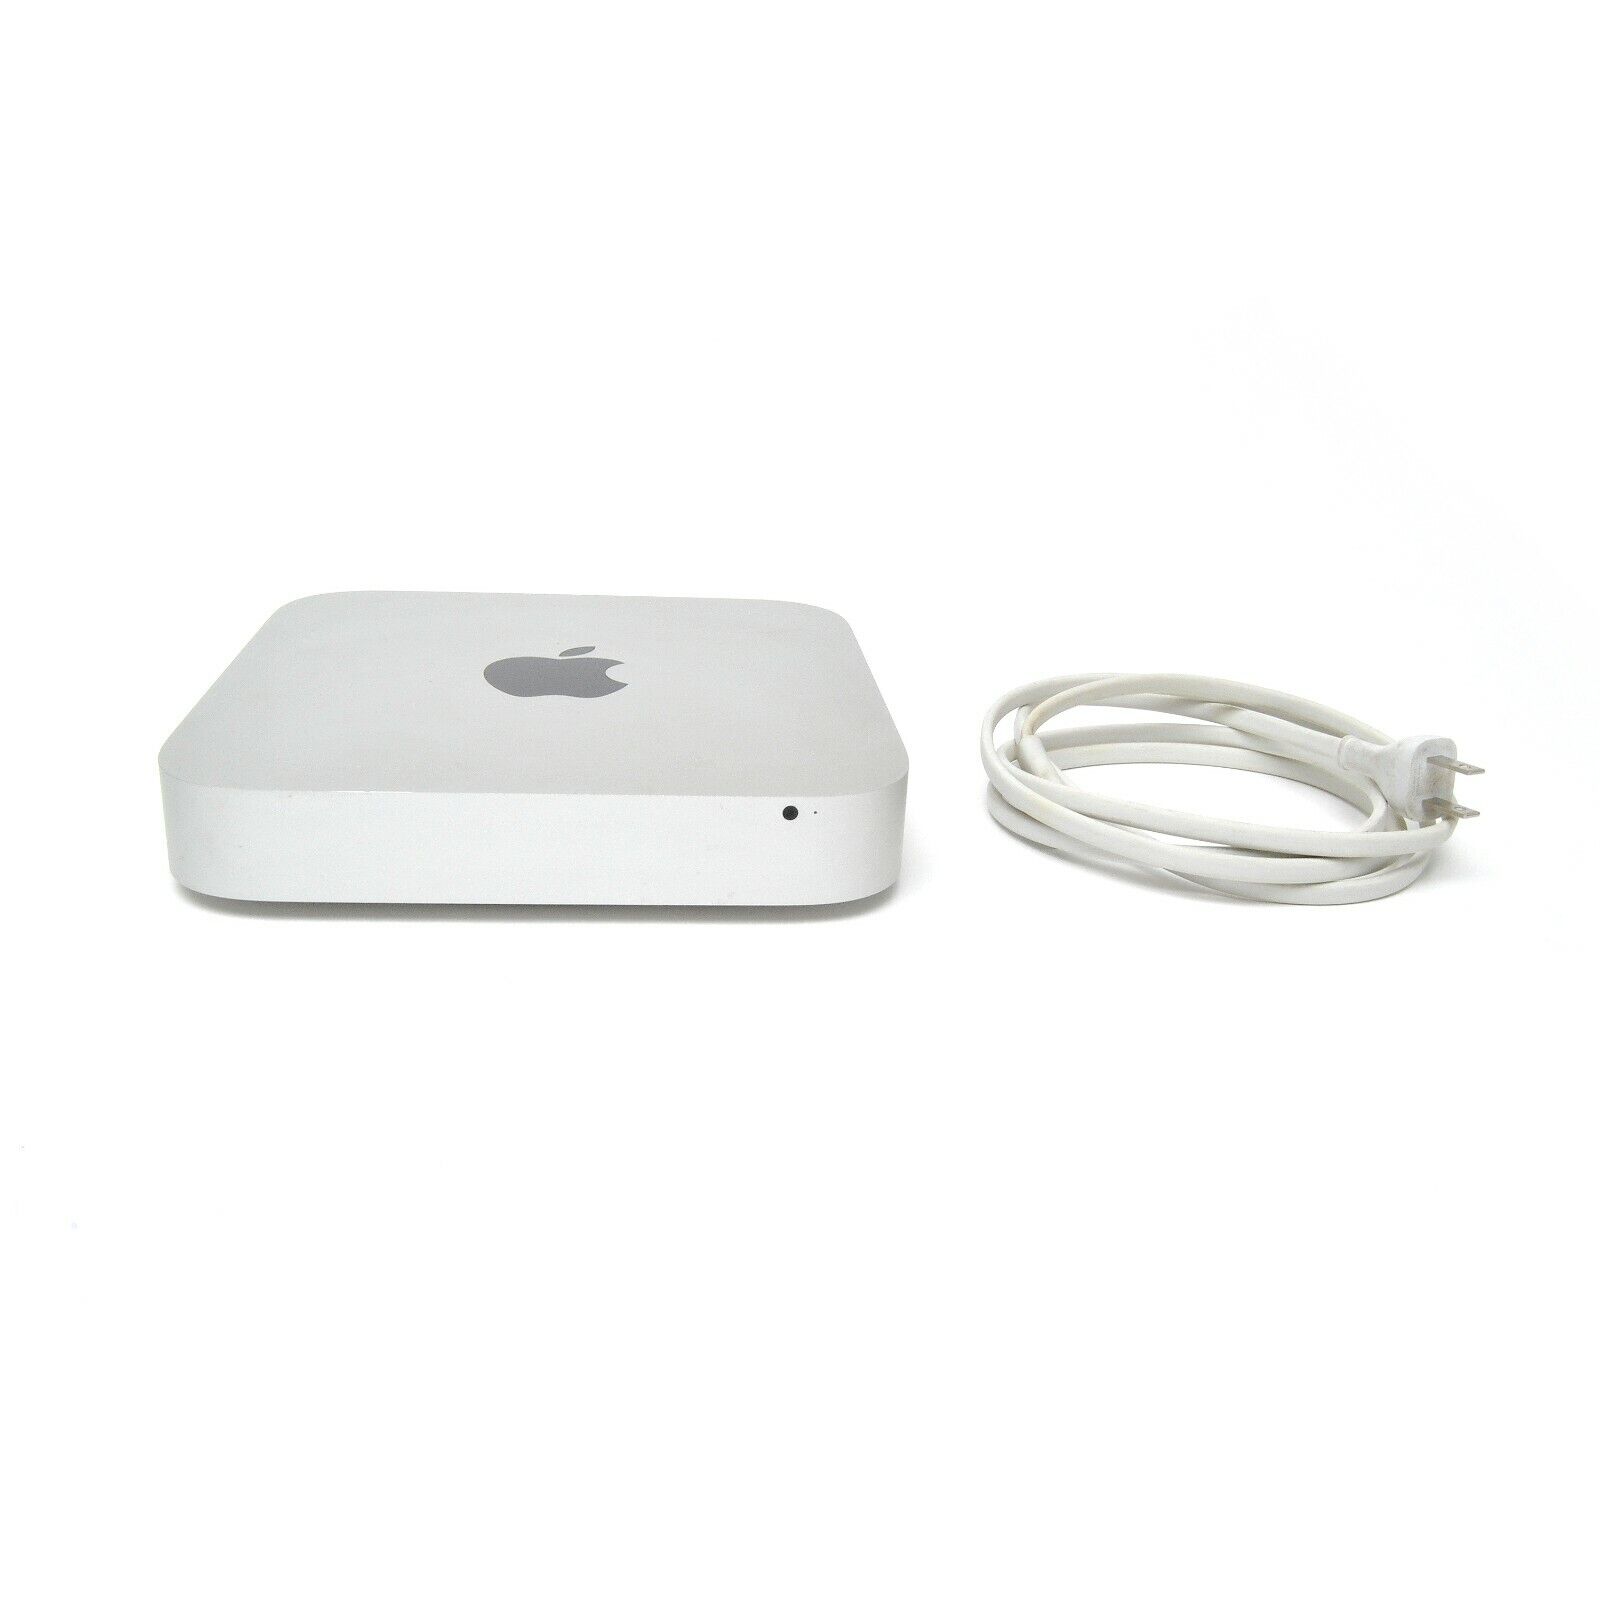 Apple Mac mini A1347 - MD387LL/A October 2012 1 TB HD 10 GB RAM 2.5 GHz Core i5